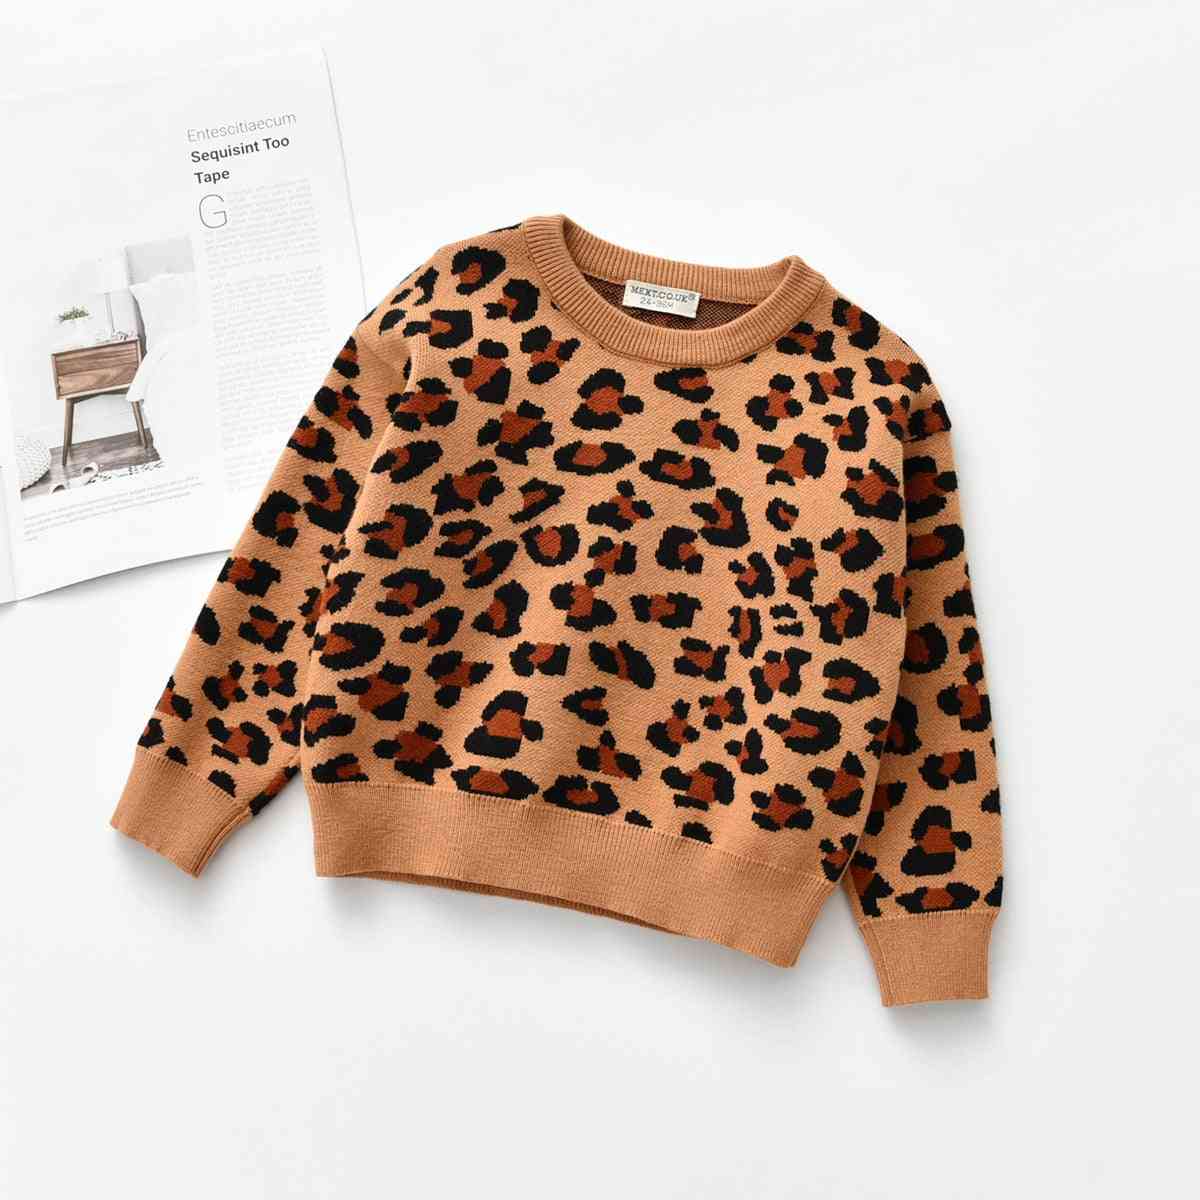 Pulover tricotat leopard casual cu mâneci lungi, haine pentru băieți / fete pentru copii mici